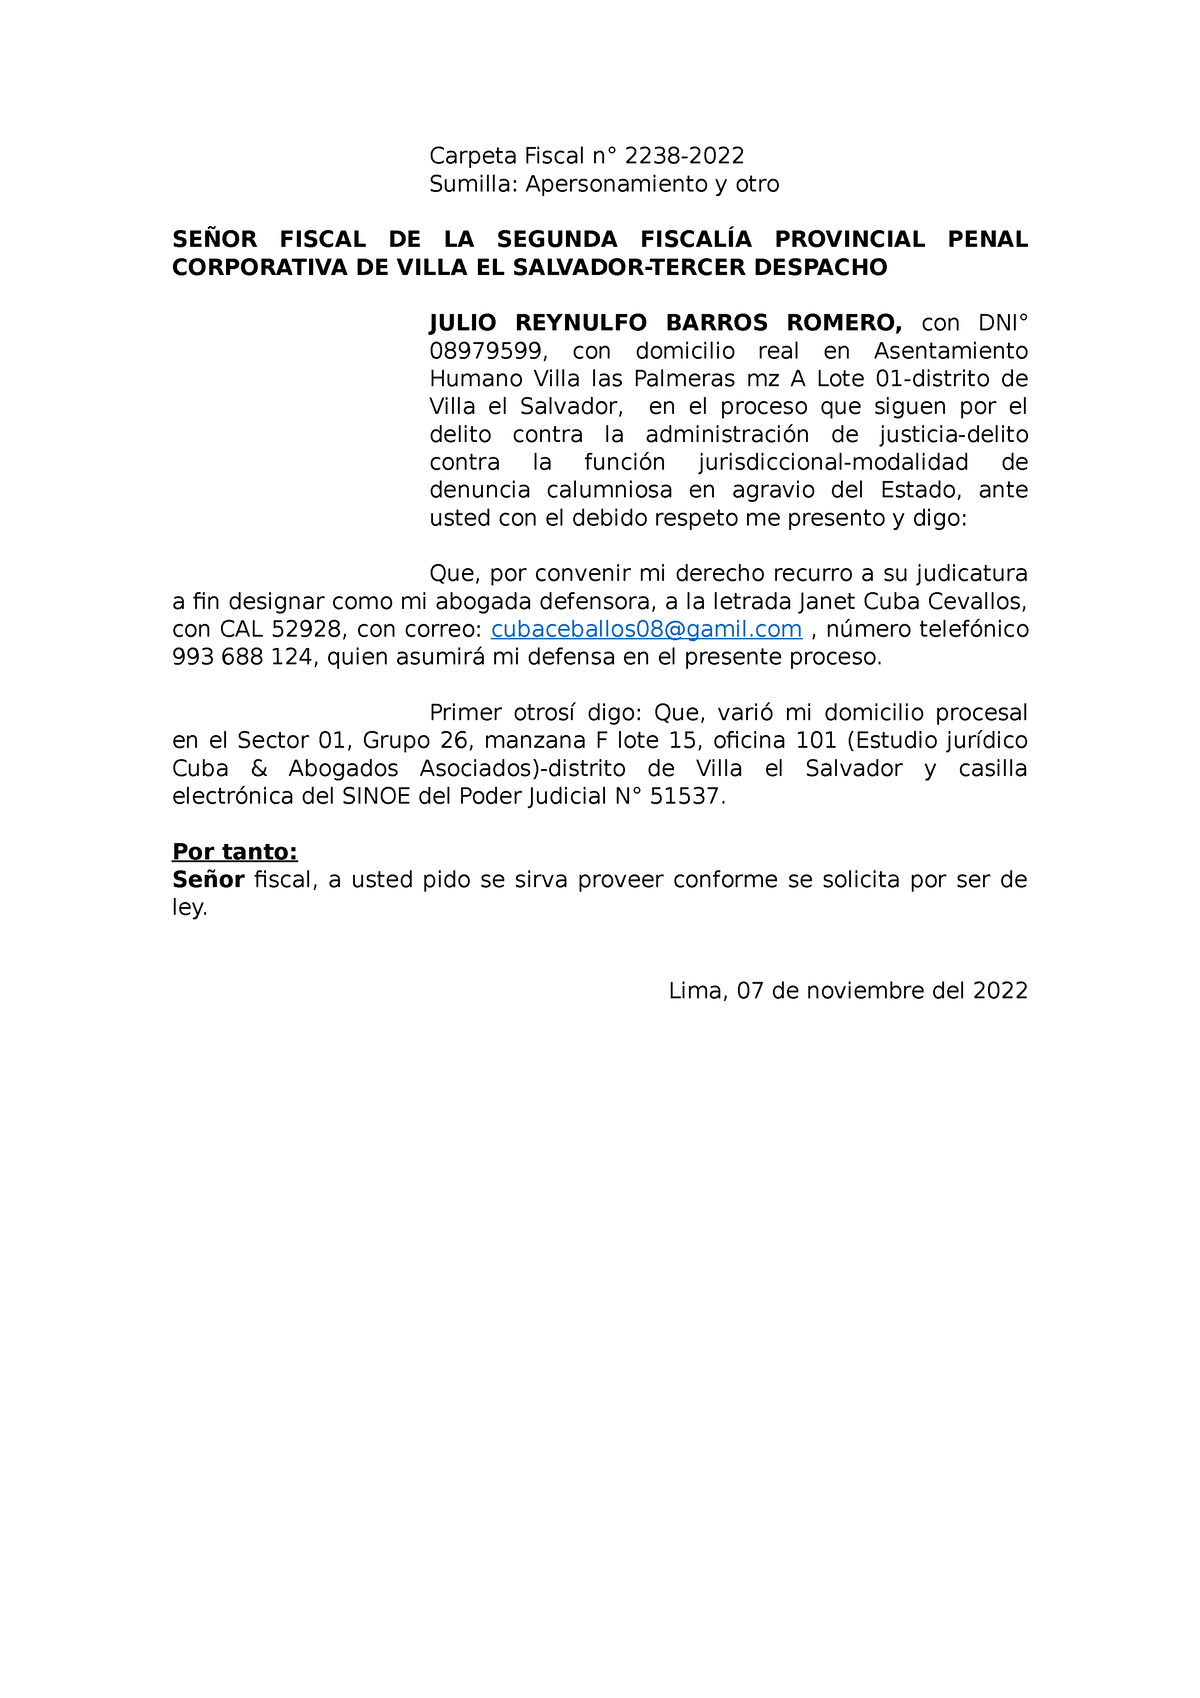 Modelo DE Escrito DE Apersonamiento - Carpeta Fiscal n° 2238- Sumilla ...